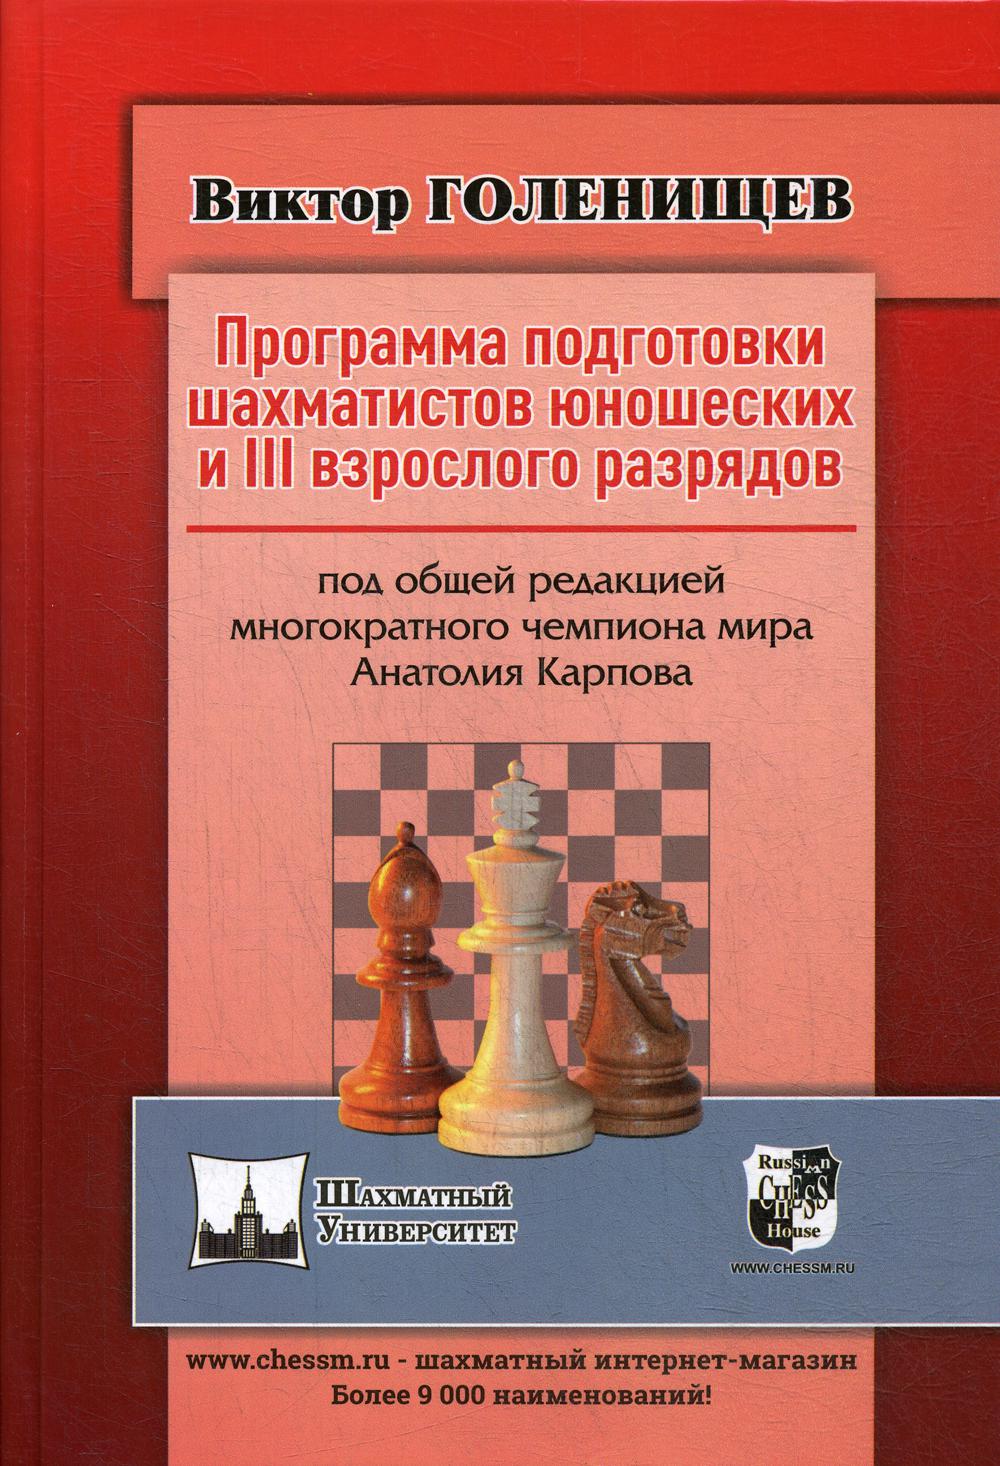 фото Книга программа подготовки шахматистов юношеских и 3 взрослого разрядов russian chess house